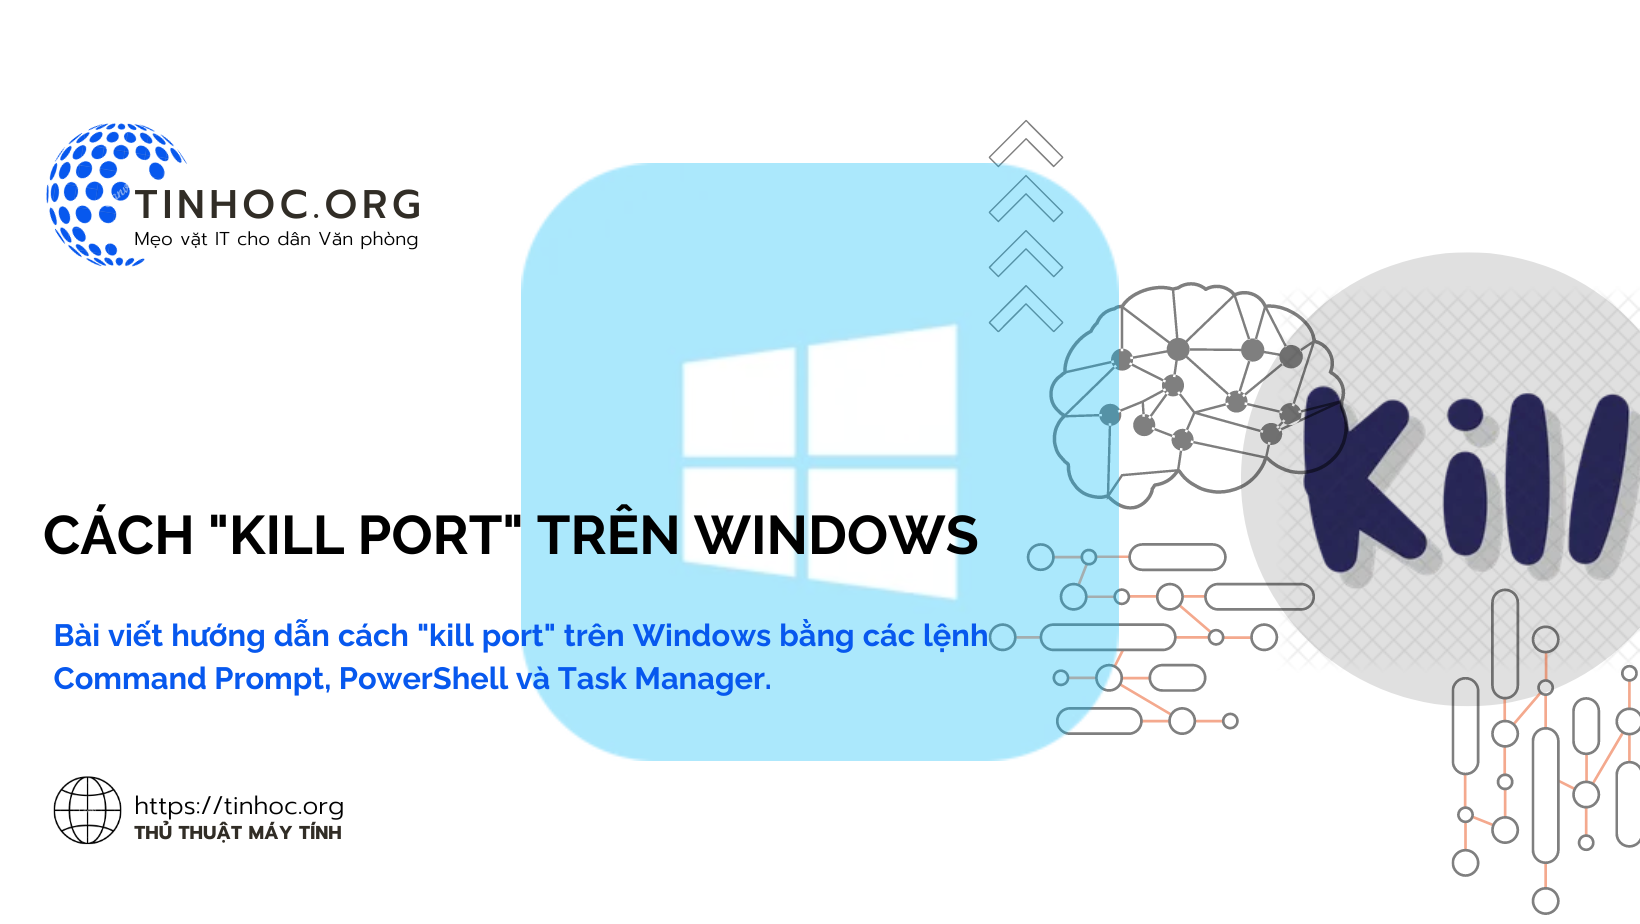 Bài viết hướng dẫn cách "kill port" trên Windows bằng các lệnh Command Prompt, PowerShell và Task Manager.